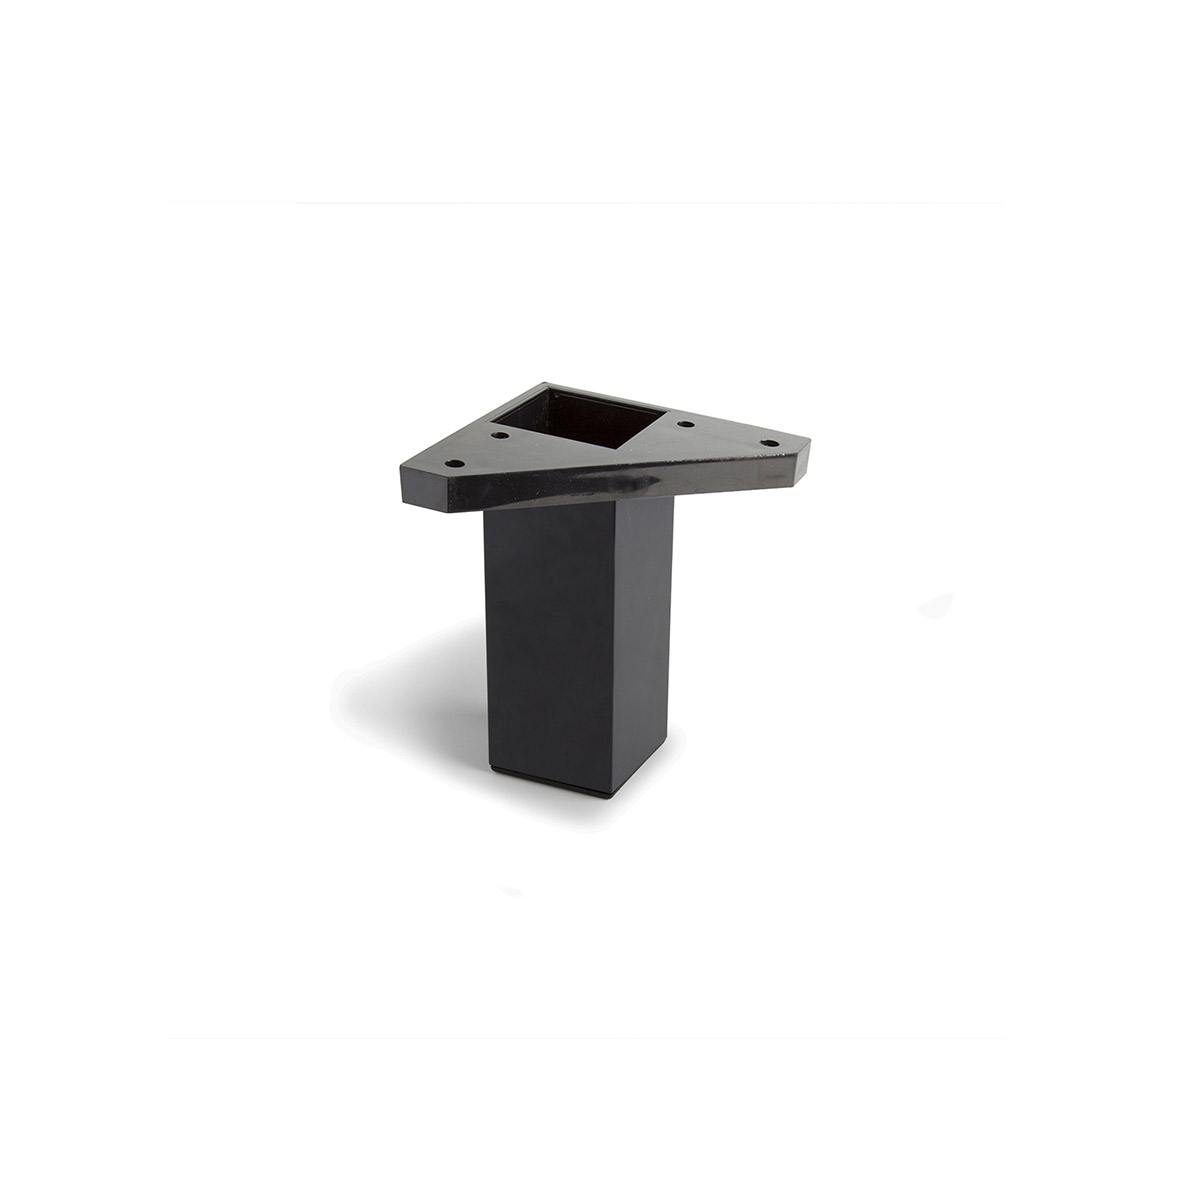 Pied carré en plastique d'une hauteur de 100 mm et finition noir. Dimensions: 42x42x100 mm